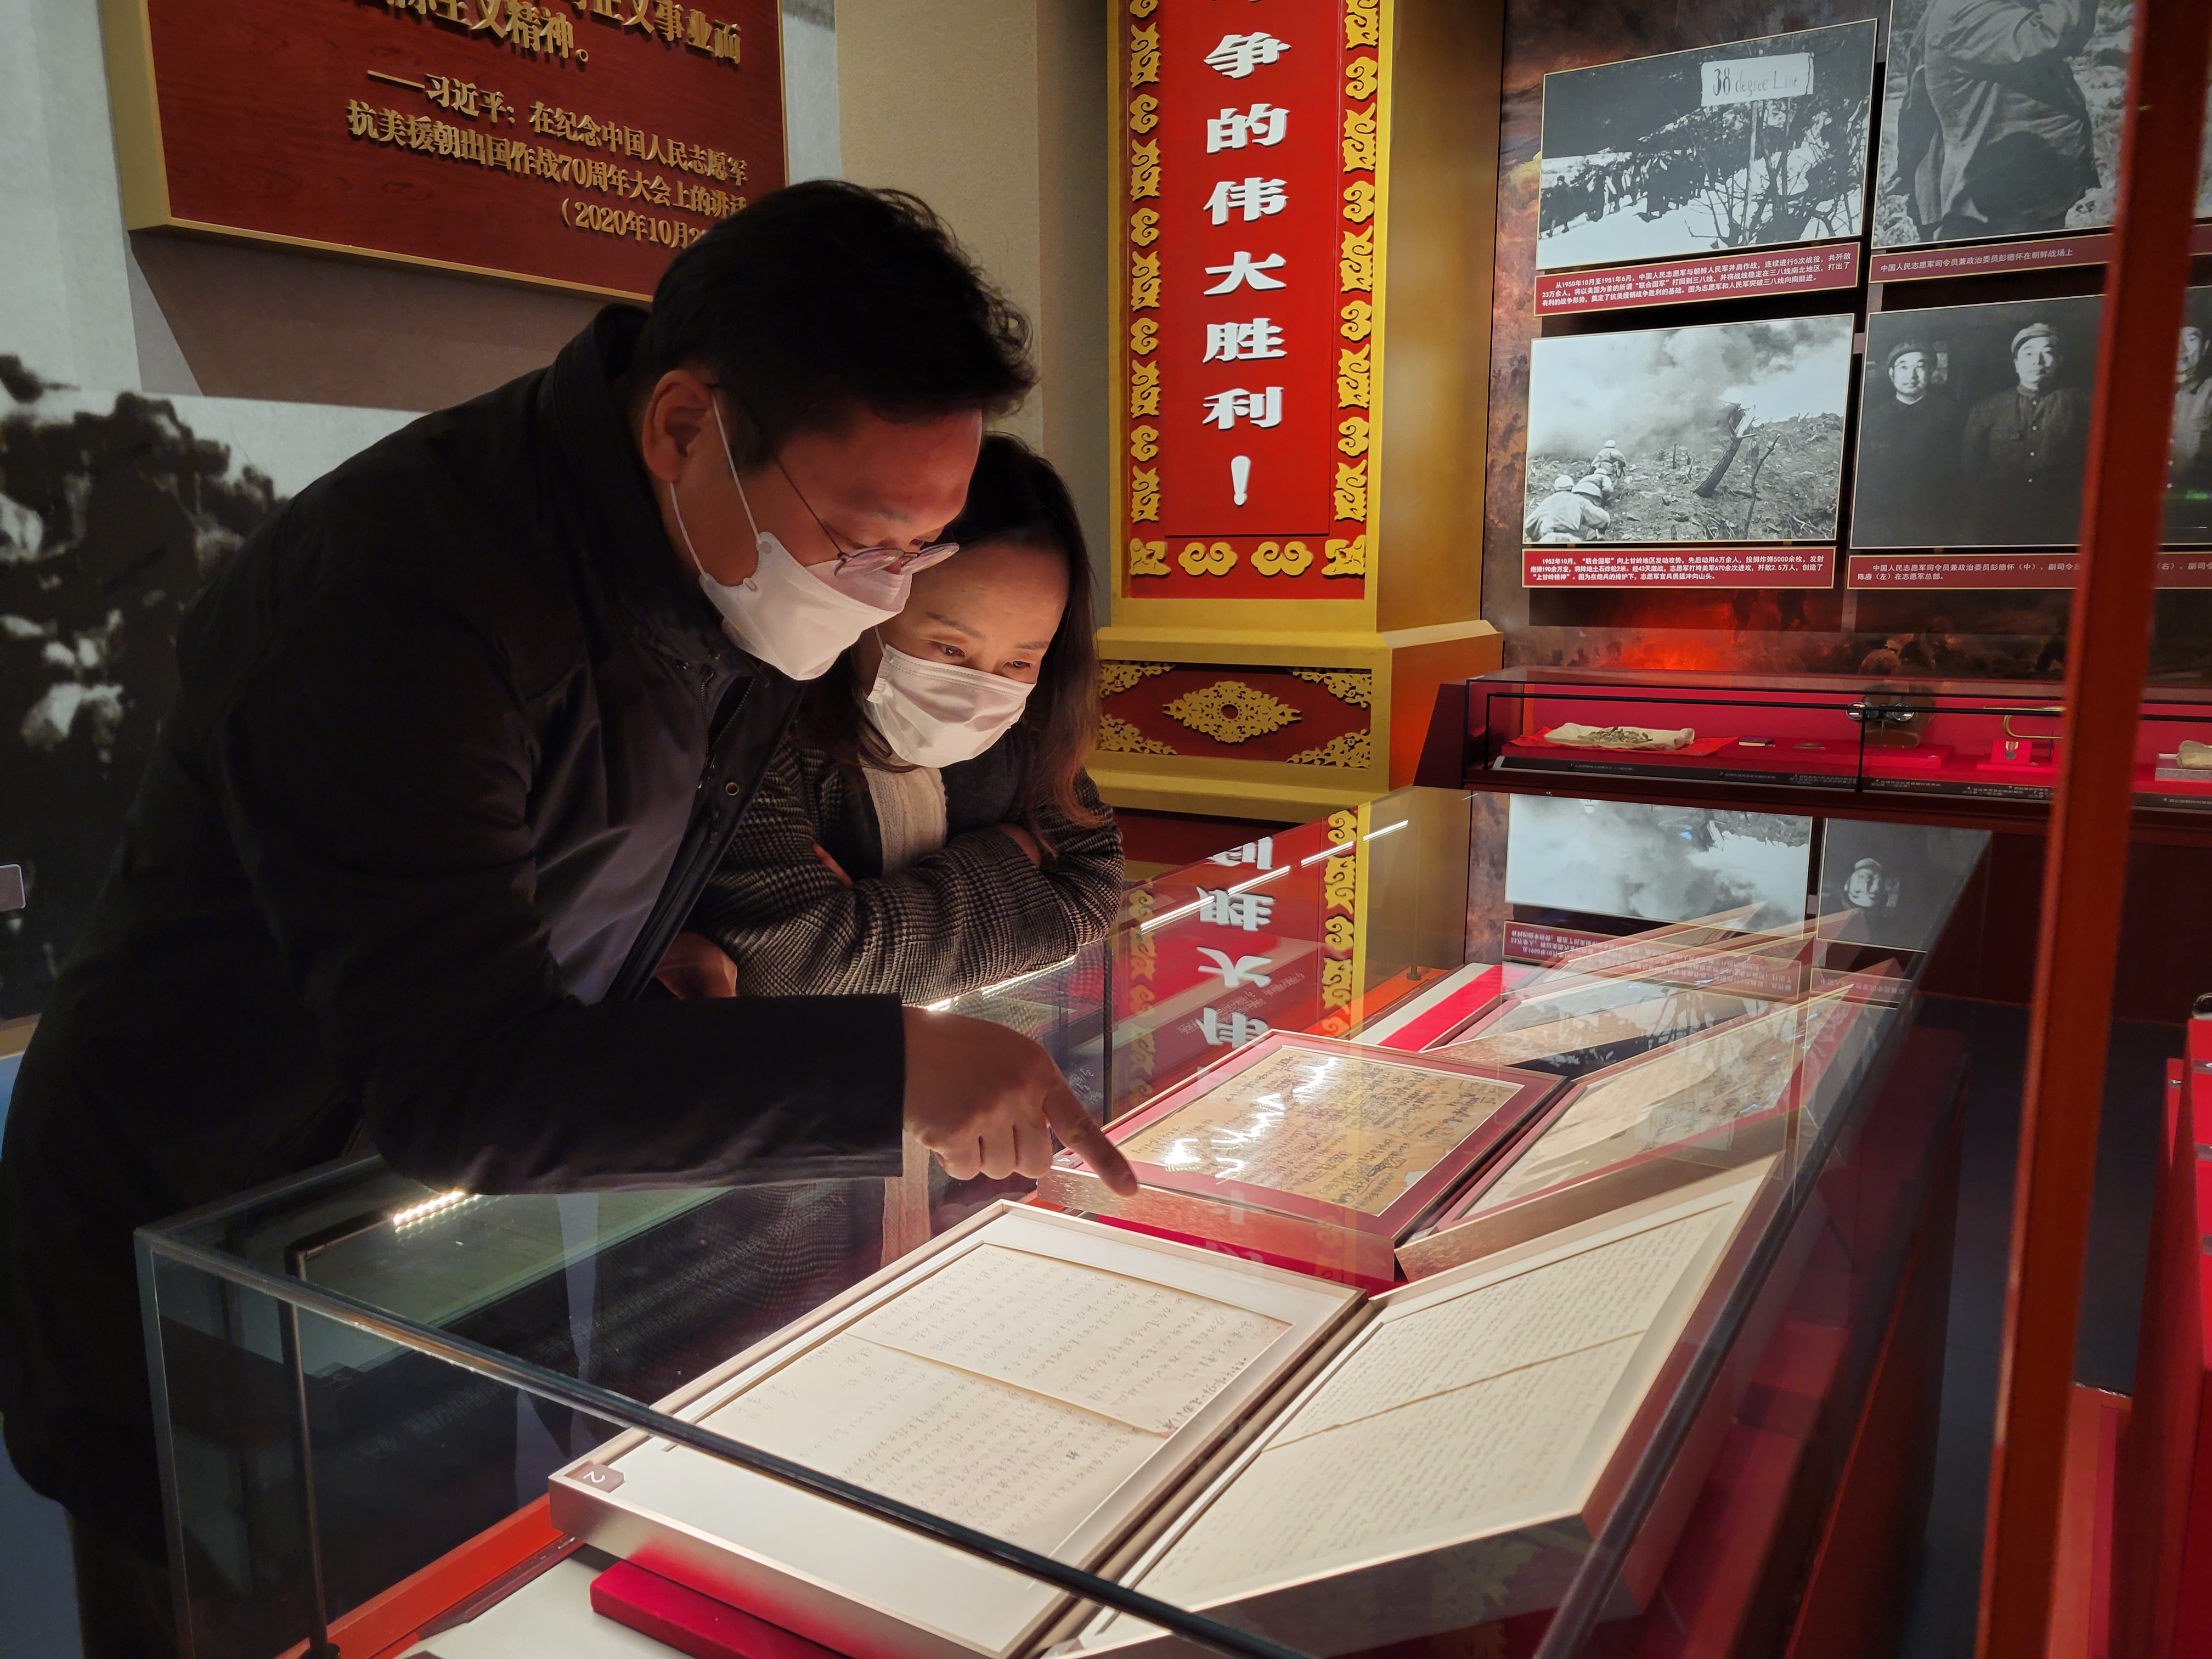 중국공산당역사박물관의 항미원조 전시관 중앙에 김일성의 파병 요청서 한글본과 중문 번역본, 마오쩌둥의 파병 명령서 등을 전시했다.